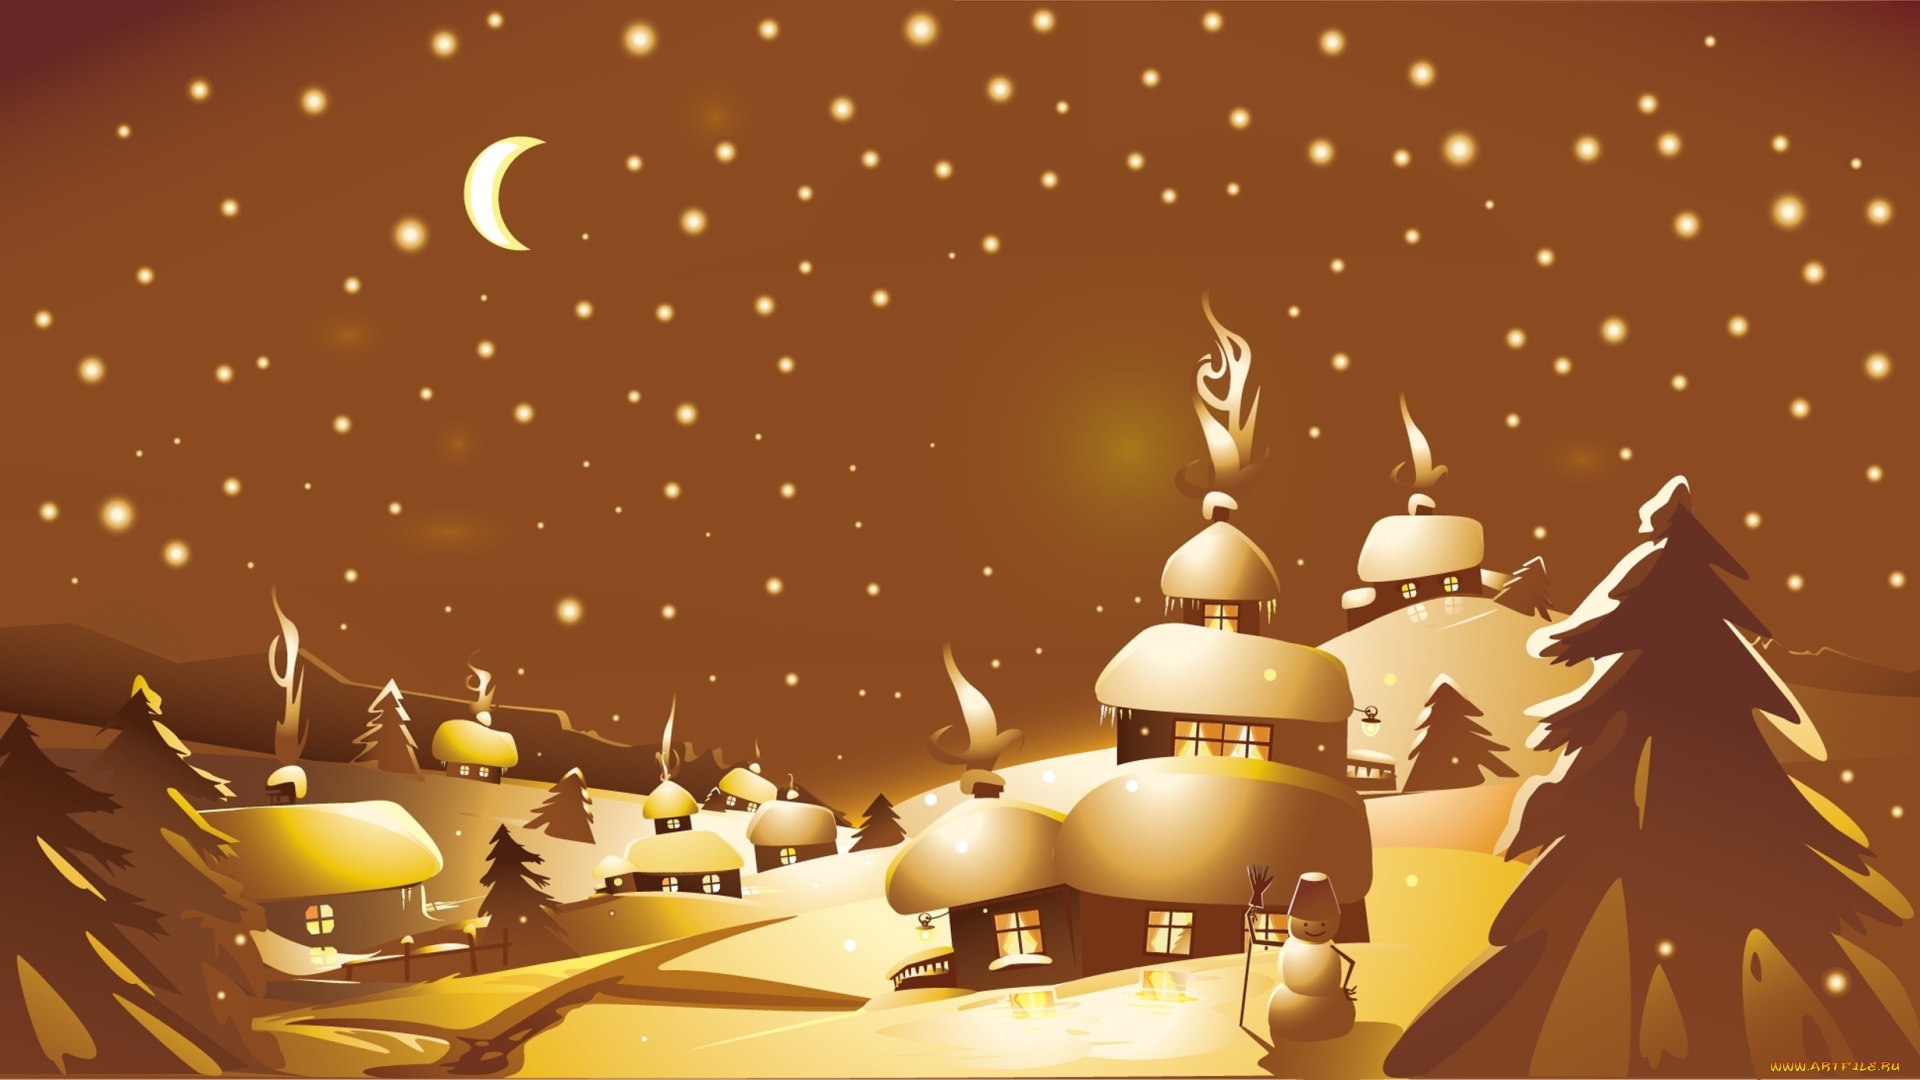 праздничные, векторная, графика, новый, год, домики, дымок, окна, ночь, звёзды, месяц, ёлки, снеговик, зима, снег, холмы